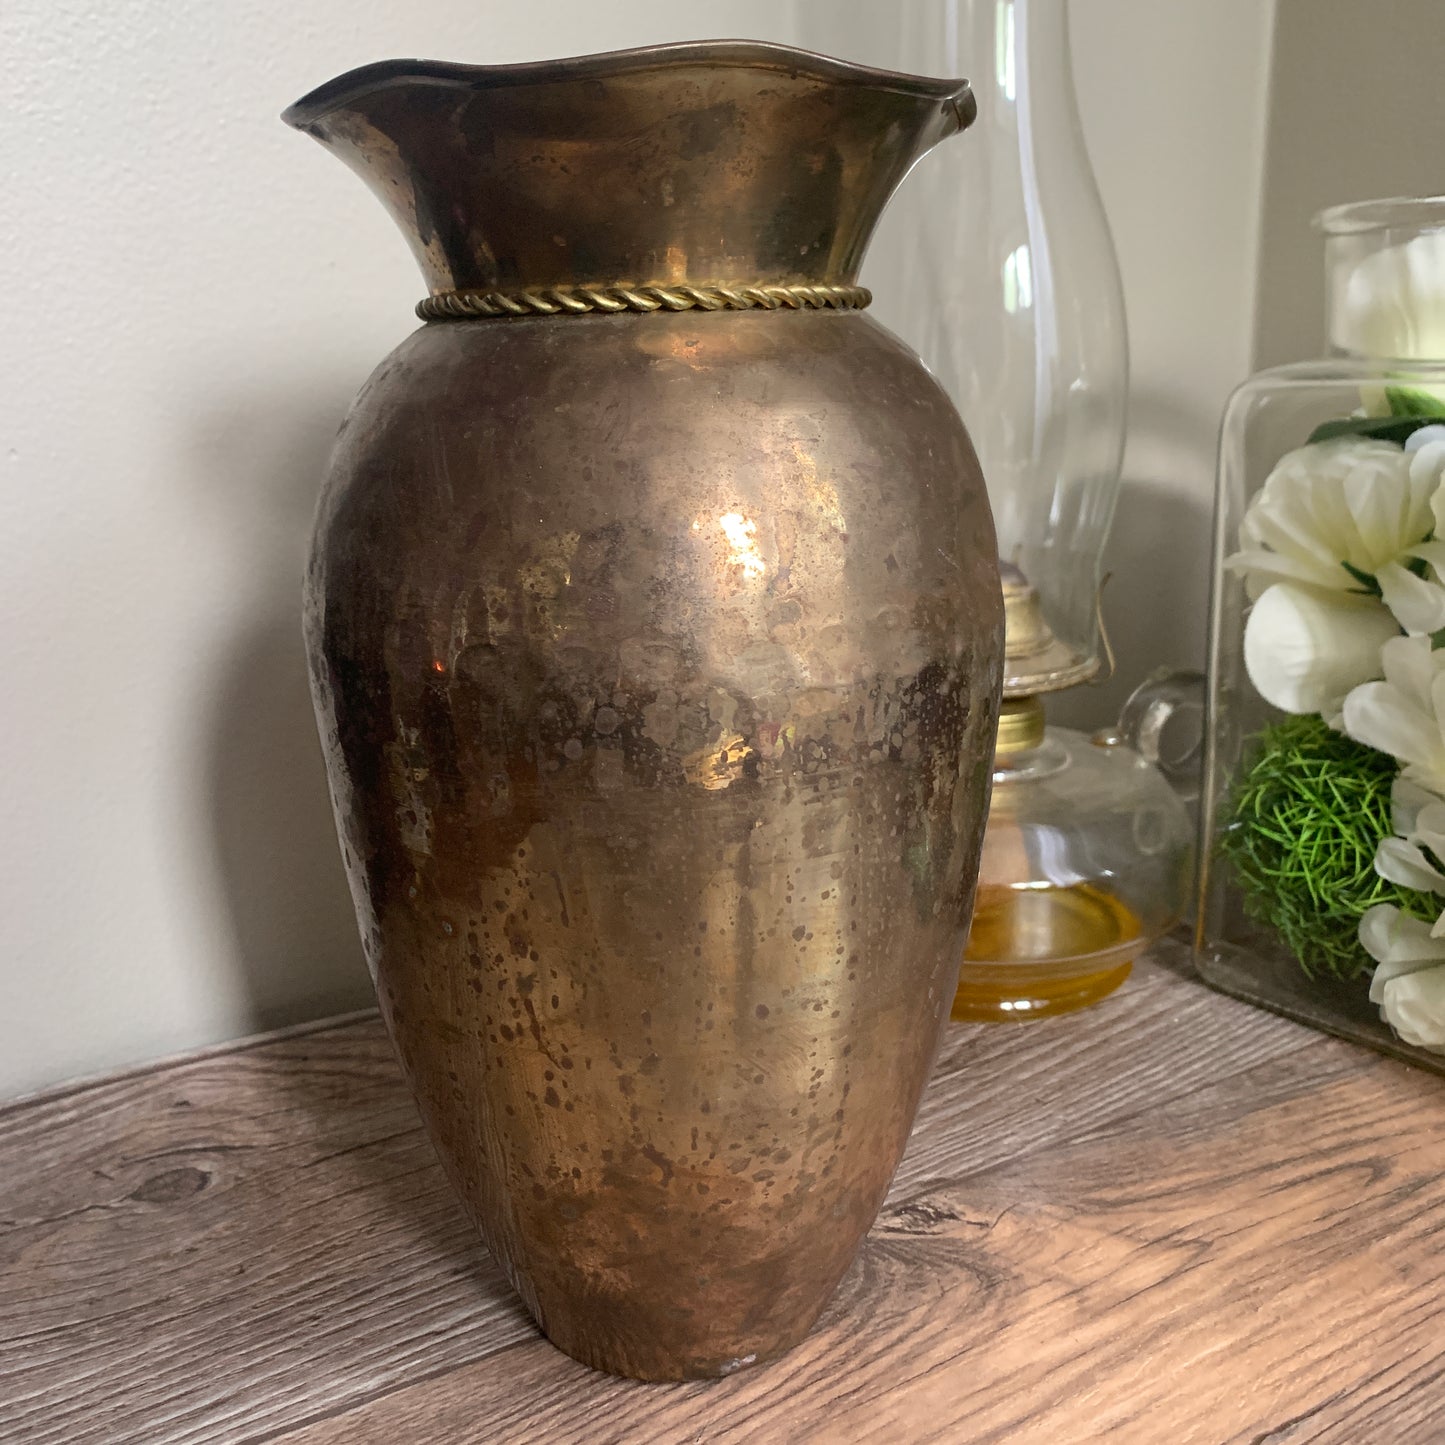 Tall Brass Vase with Tassels, Vintage Brass Planter